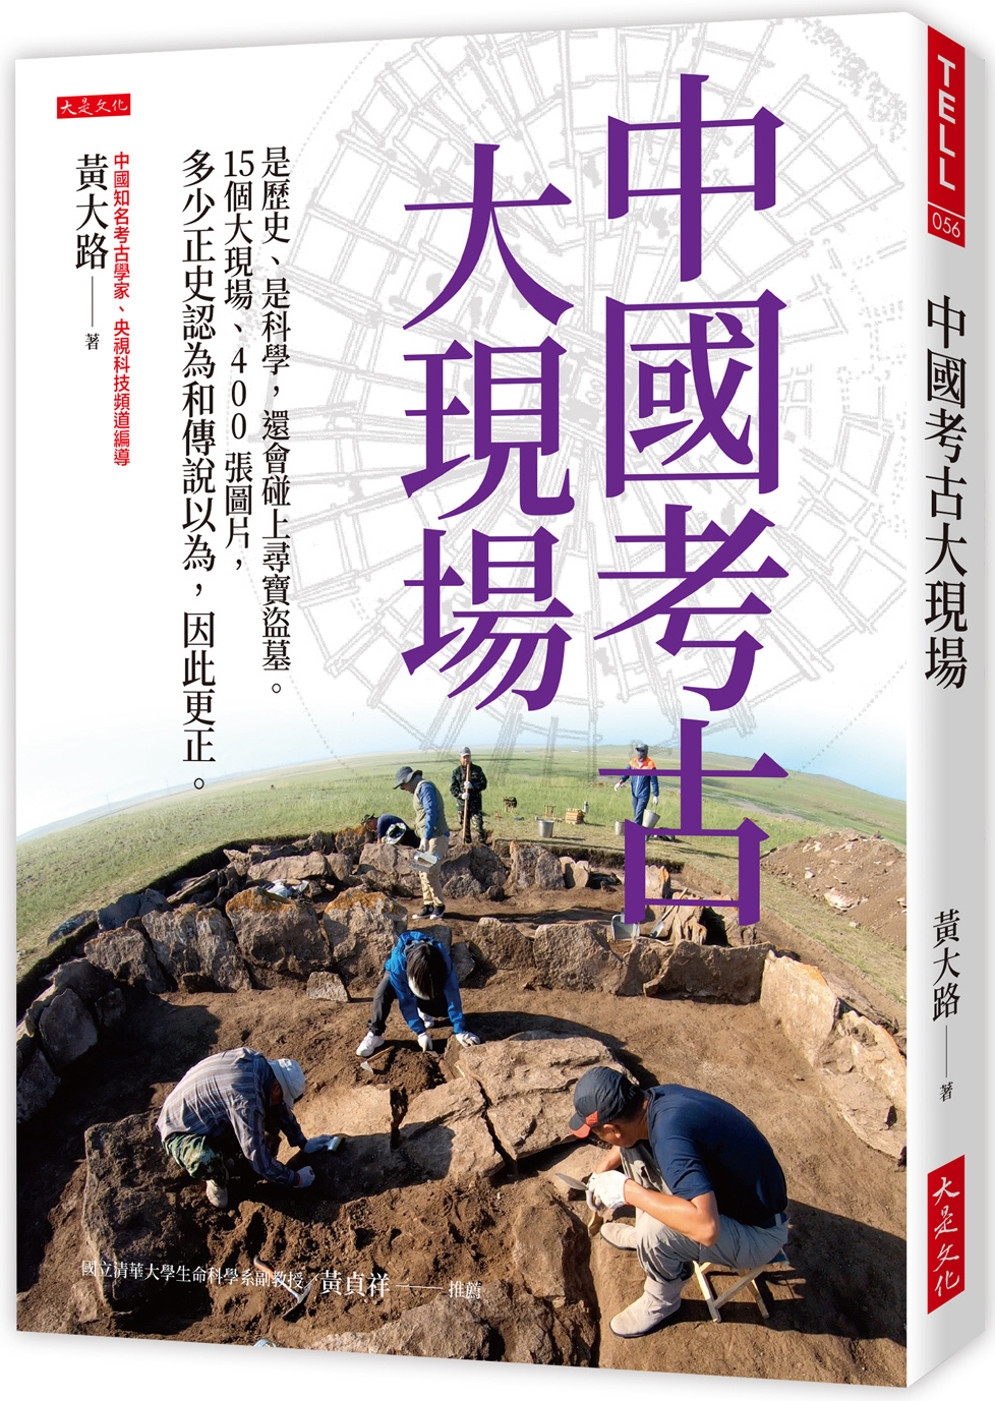 中國考古大現場：是歷史、是科學，還會碰上尋寶盜墓。15個大現場、400張圖片，多少正史認為和傳說以為，因此更正。